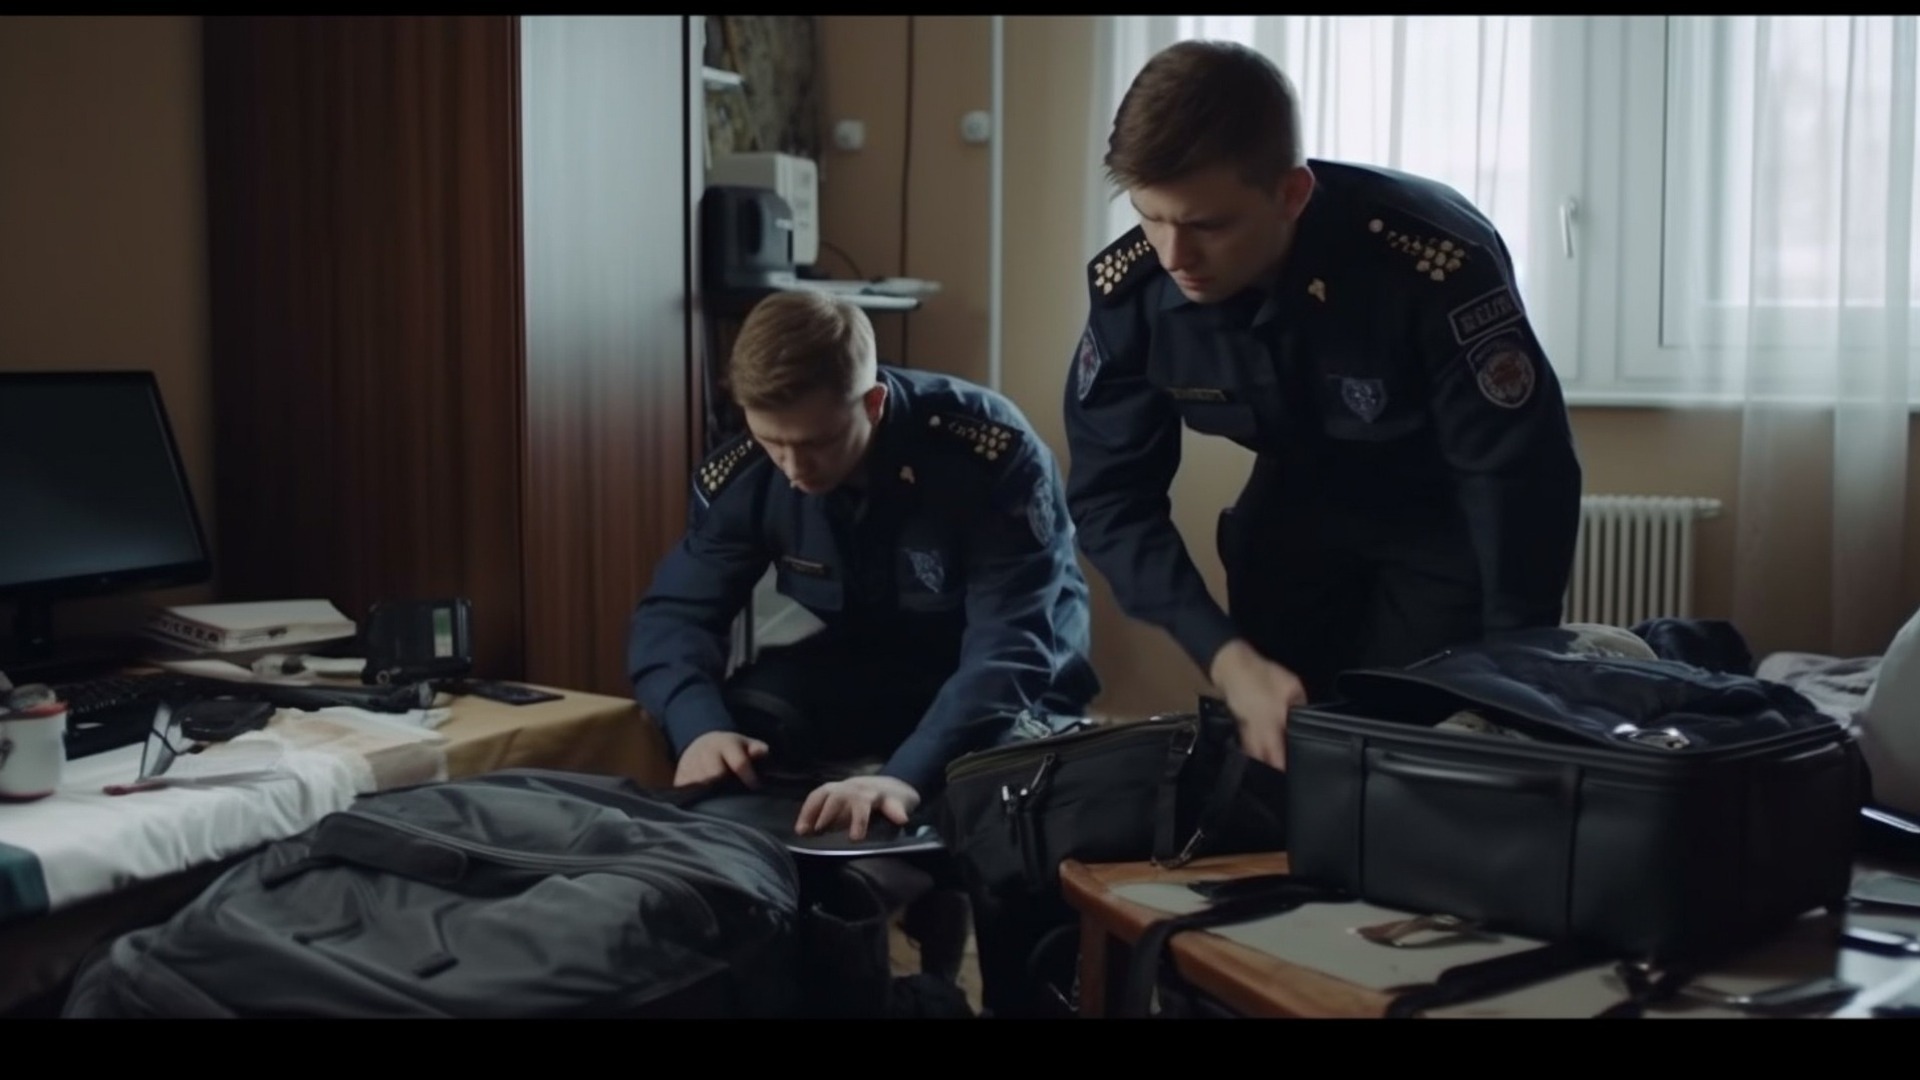 Полицейские задержали курьера, обобравшего пенсионеров во Владивостоке